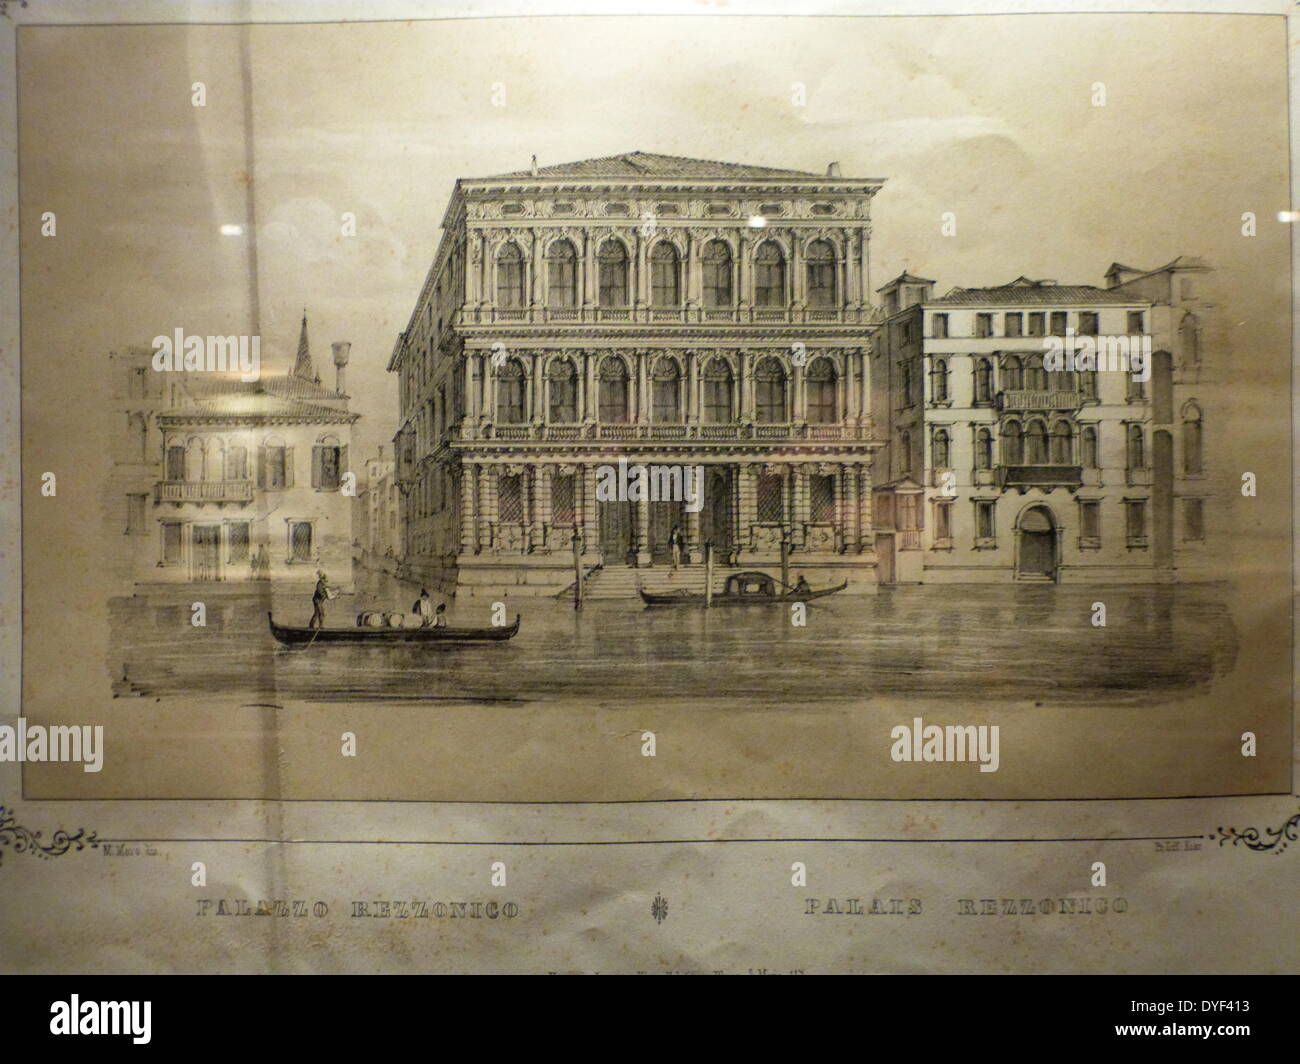 Illustration of The Palazzo Rezzonico. Stock Photo